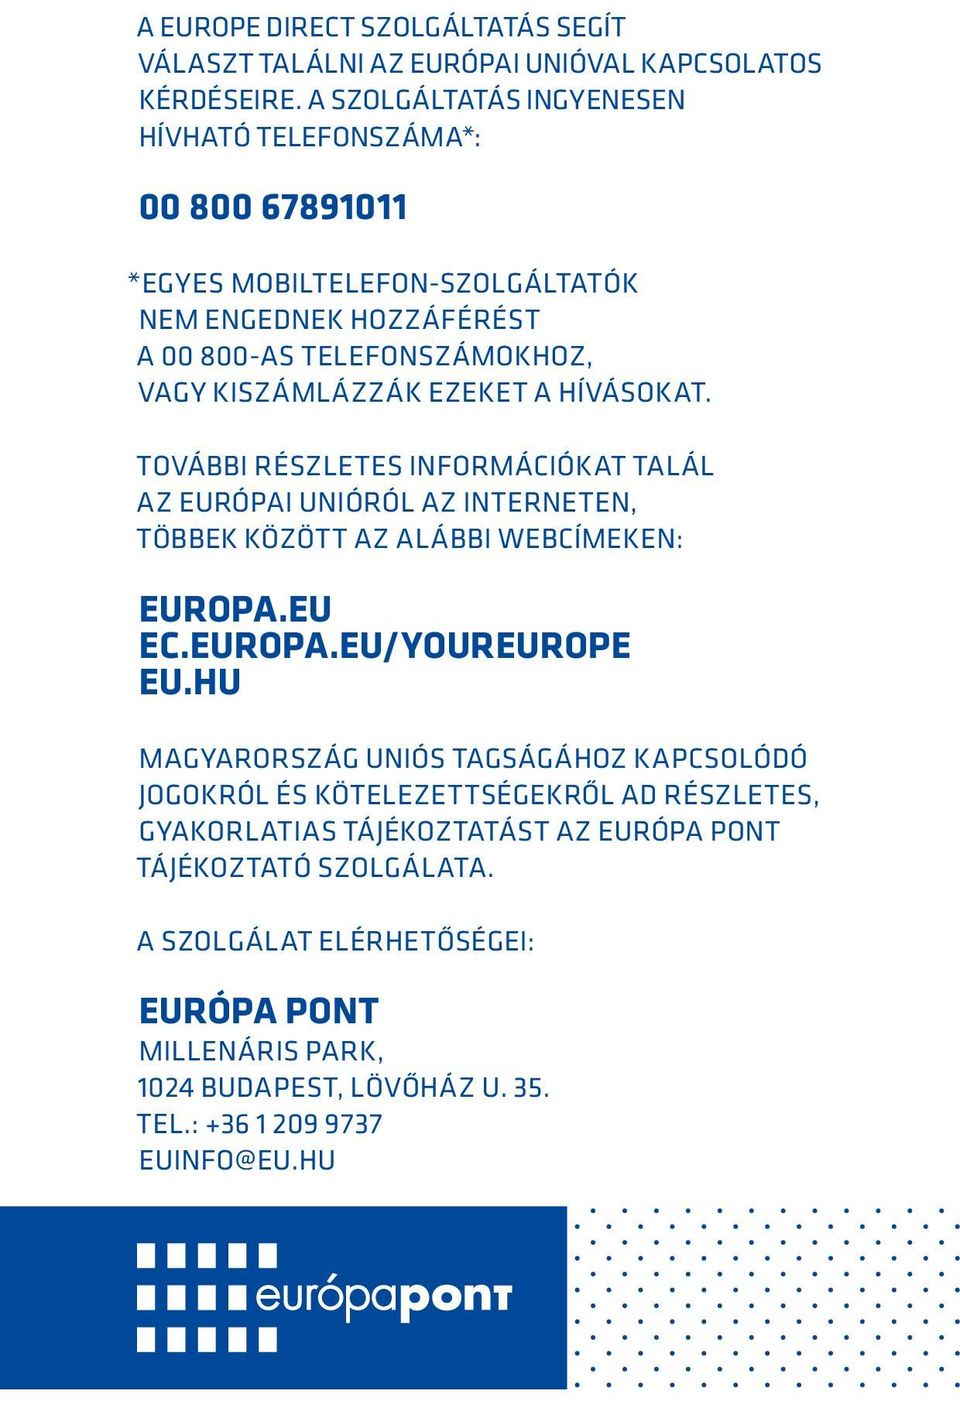 ezeket a hívásokat. További részletes információkat talál az Európai Unióról az interneten, többek között az alábbi webcímeken: europa.eu ec.europa.eu/youreurope eu.